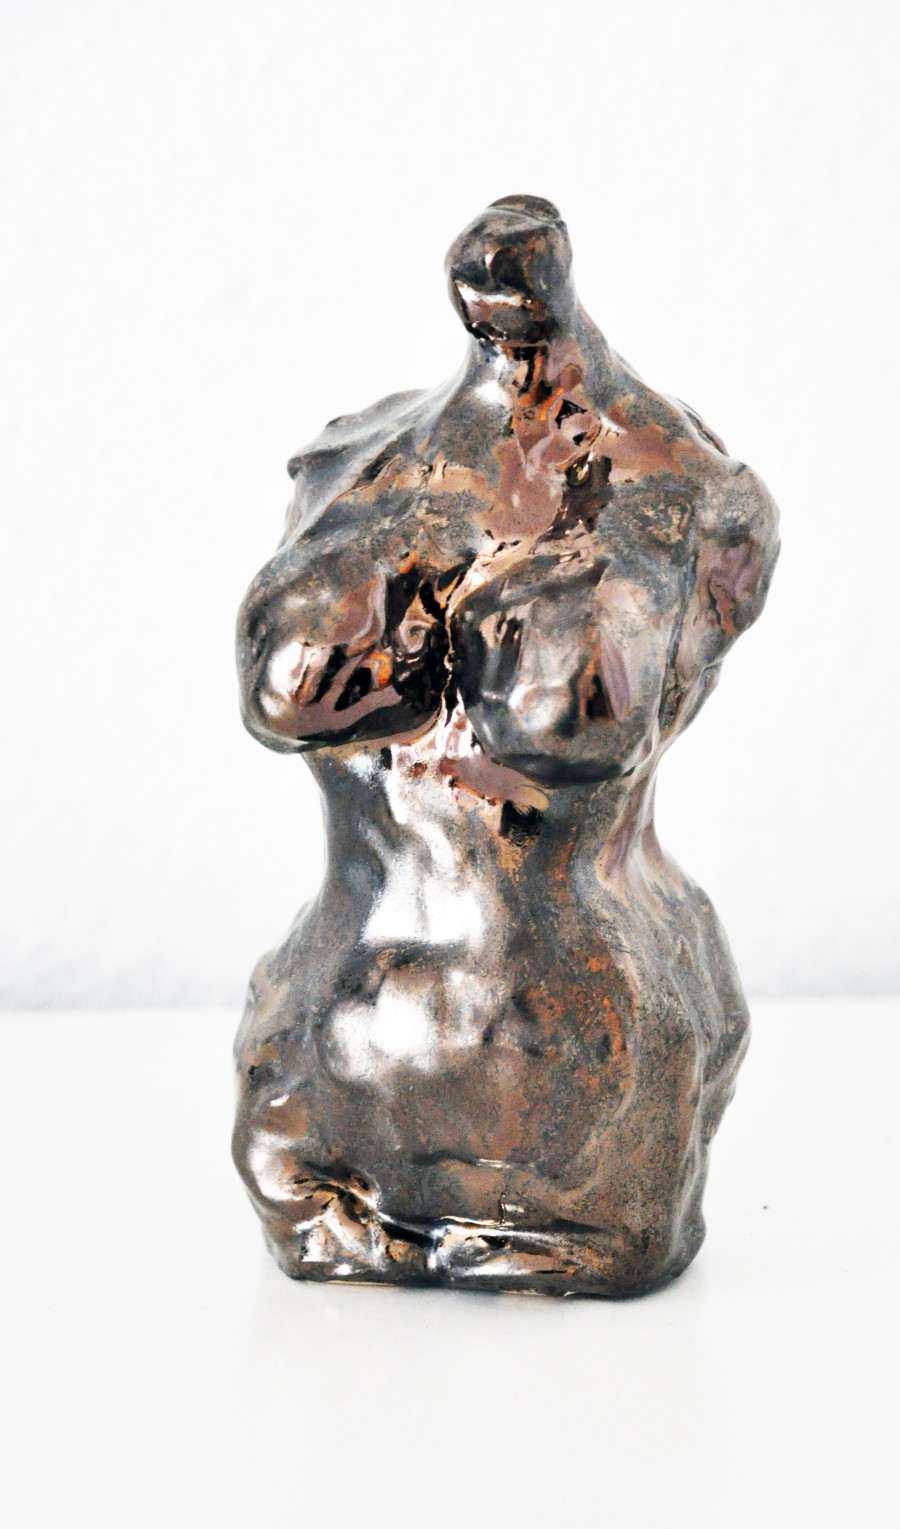 Akt, 2012, Keramik, Höhe 19 cm